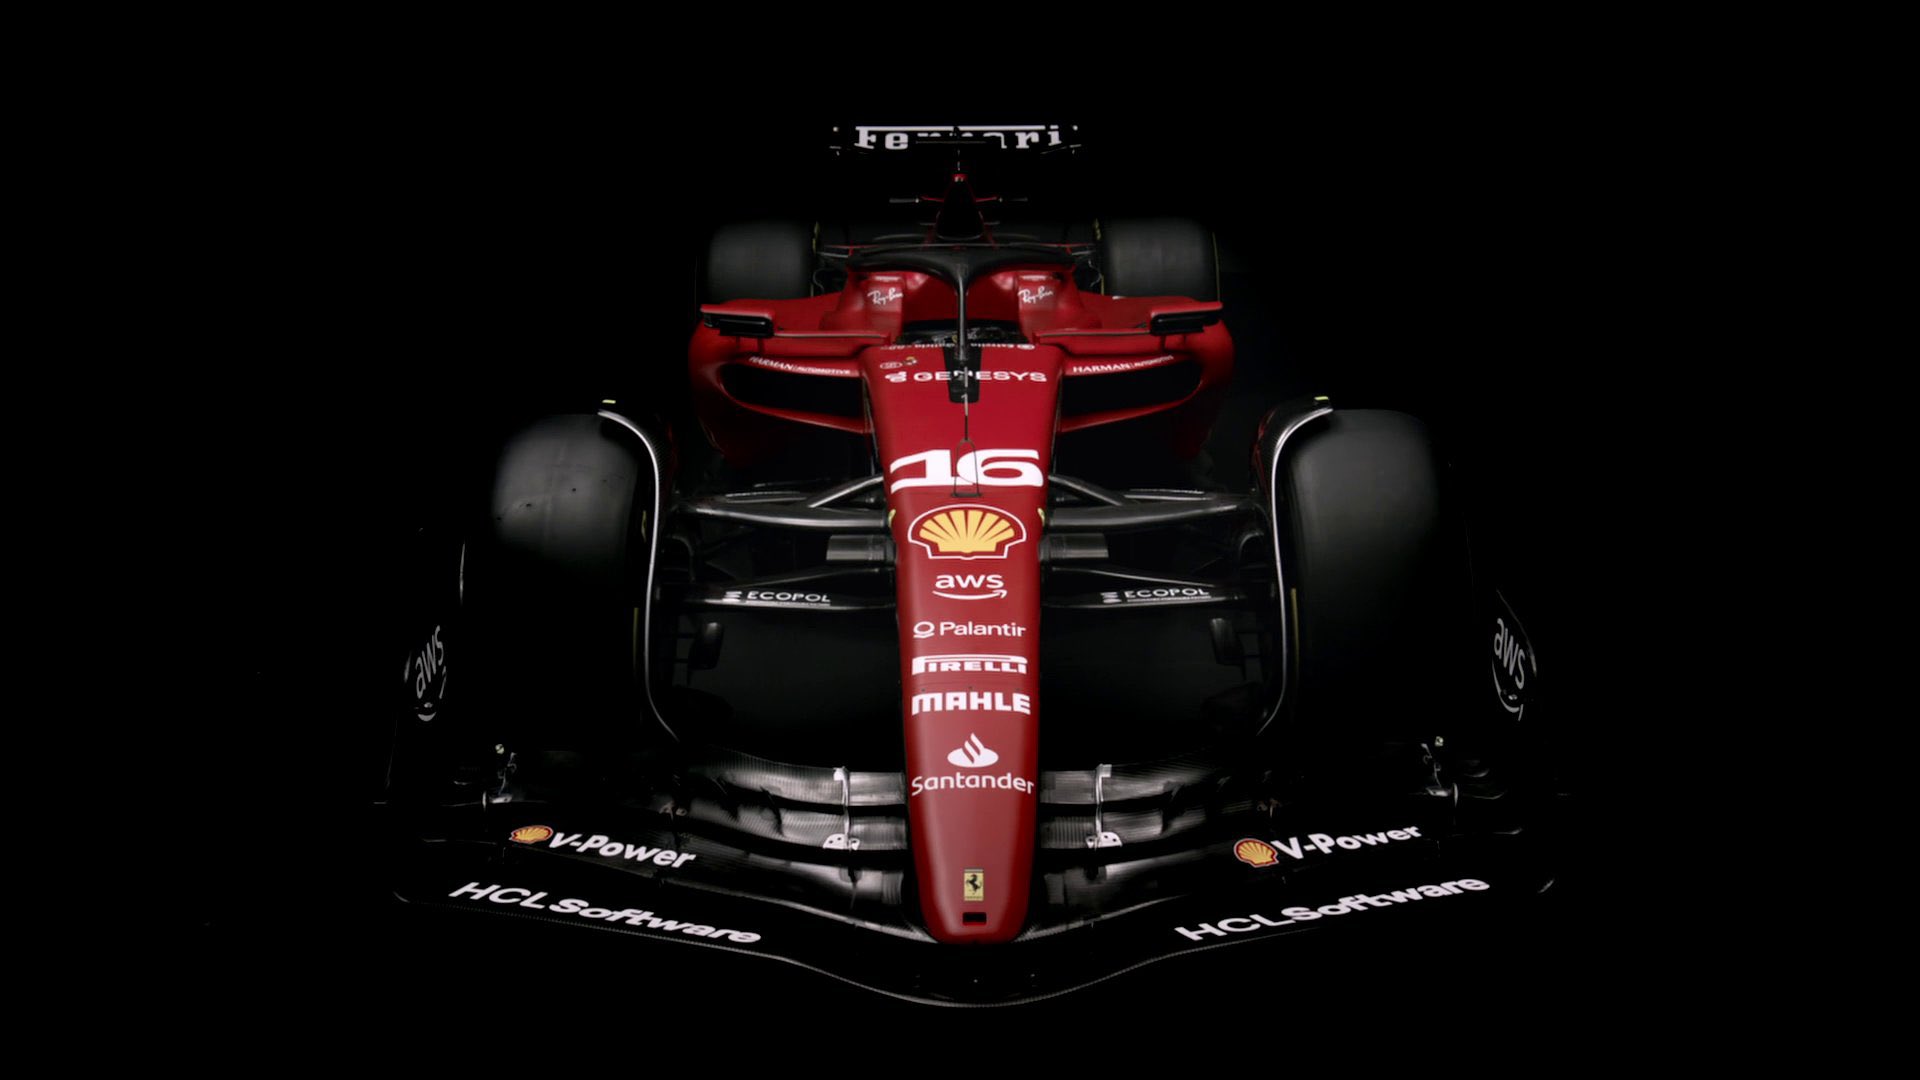 Download F1 Charles Leclerc Ferrari Iphone Wallpaper  Wallpaperscom